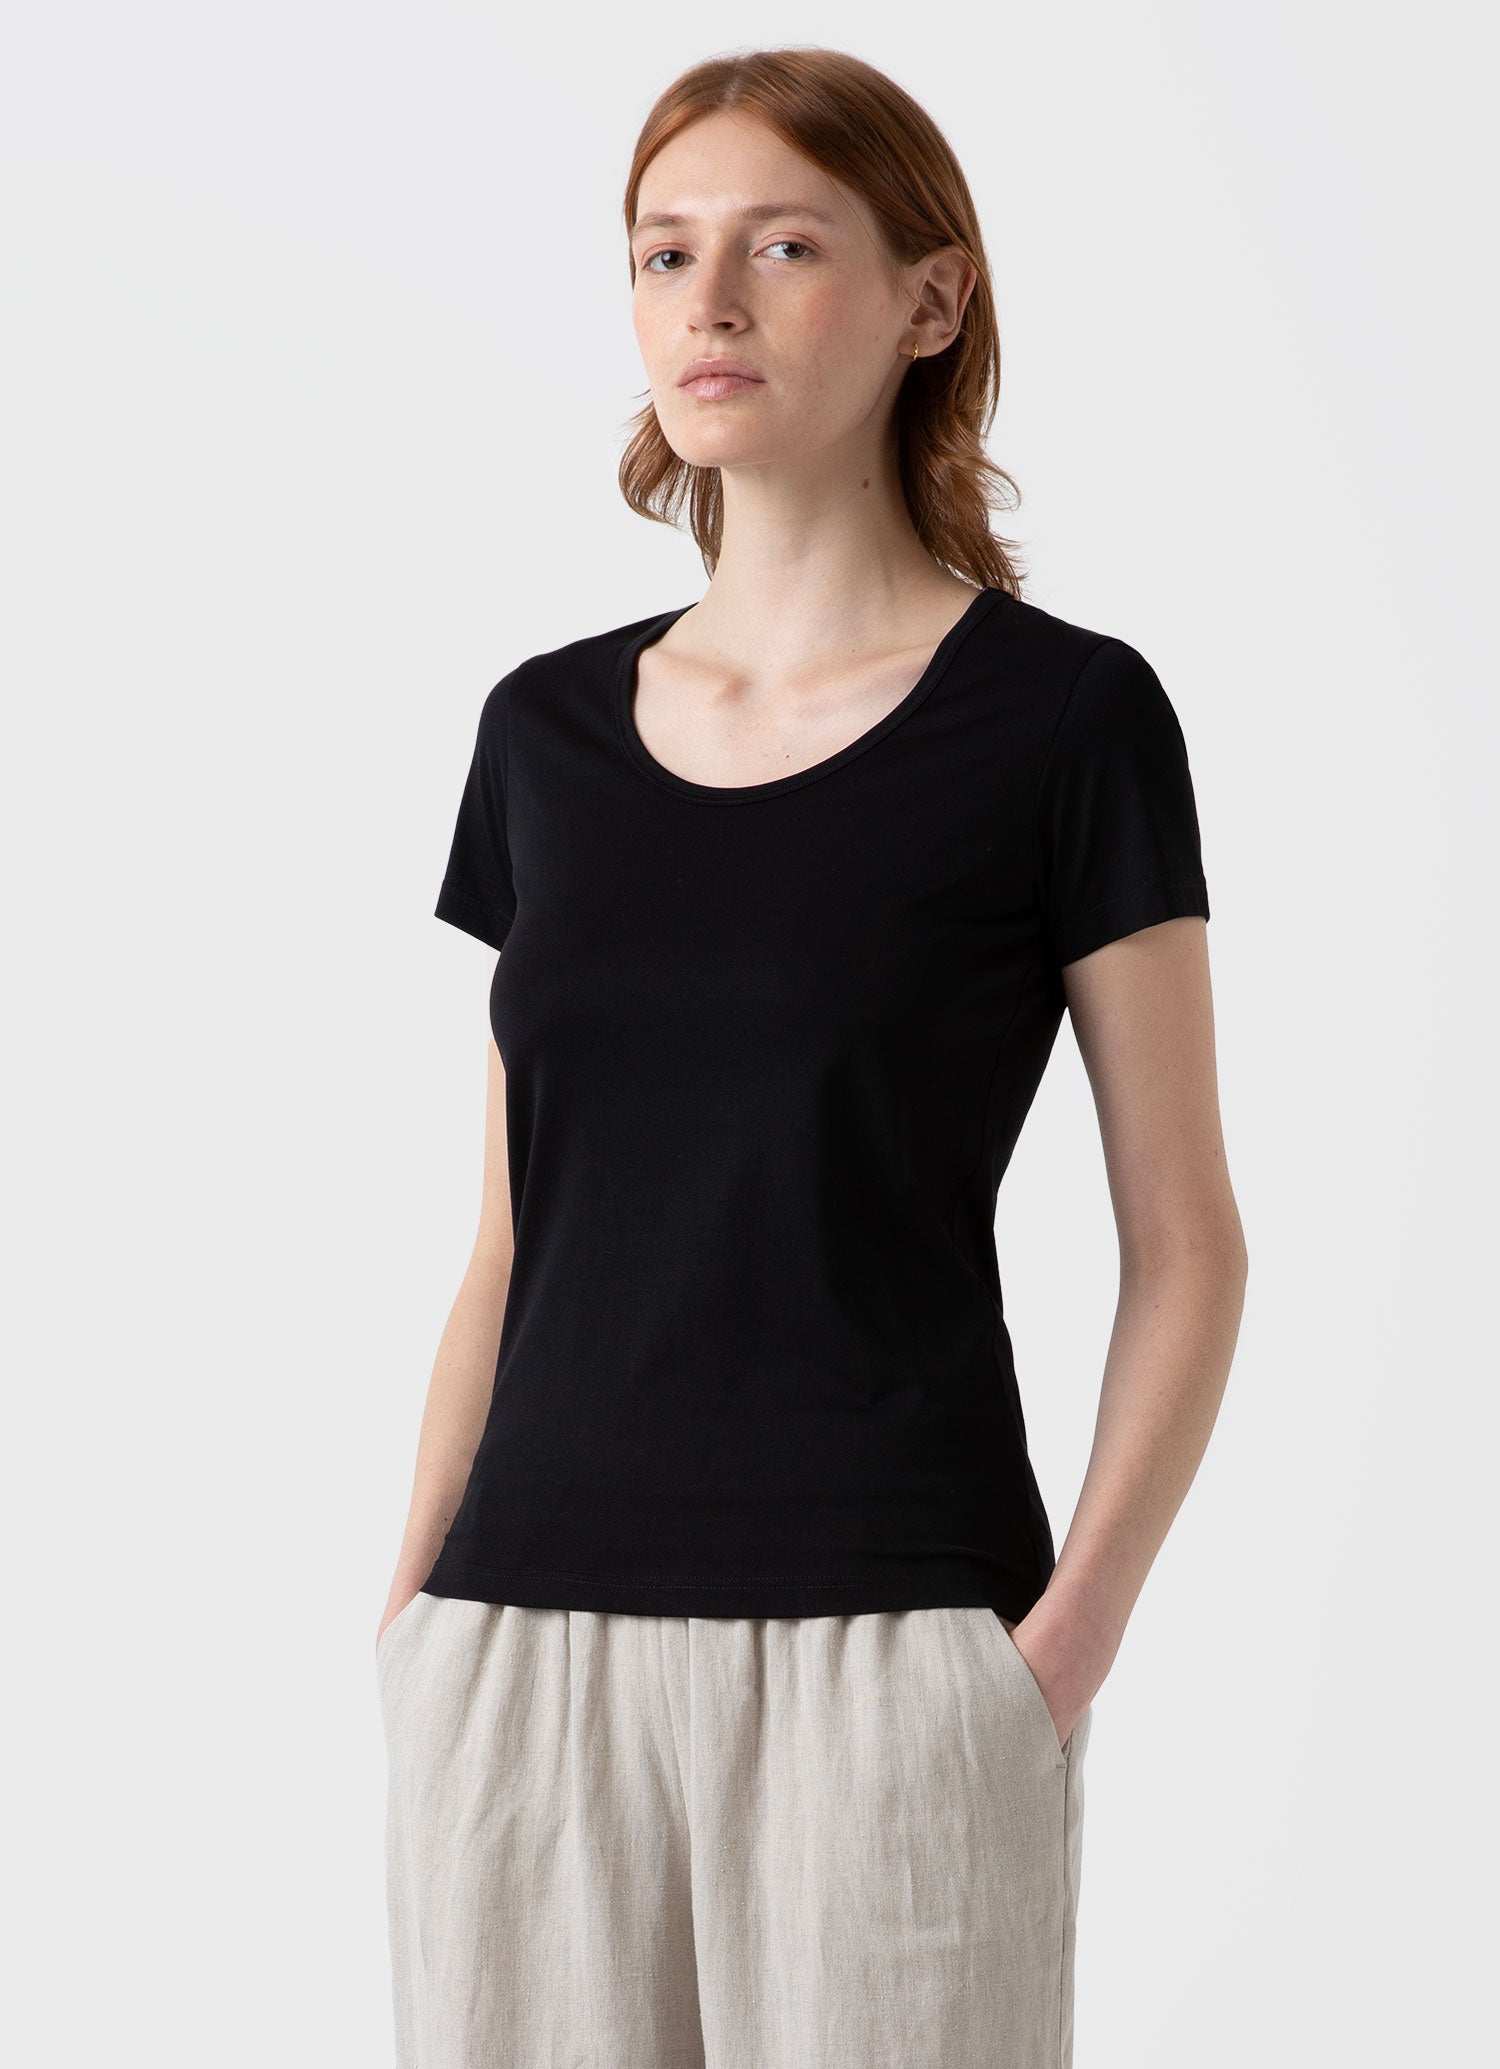 Women's Classic Scoop Neck T-shirt in Black